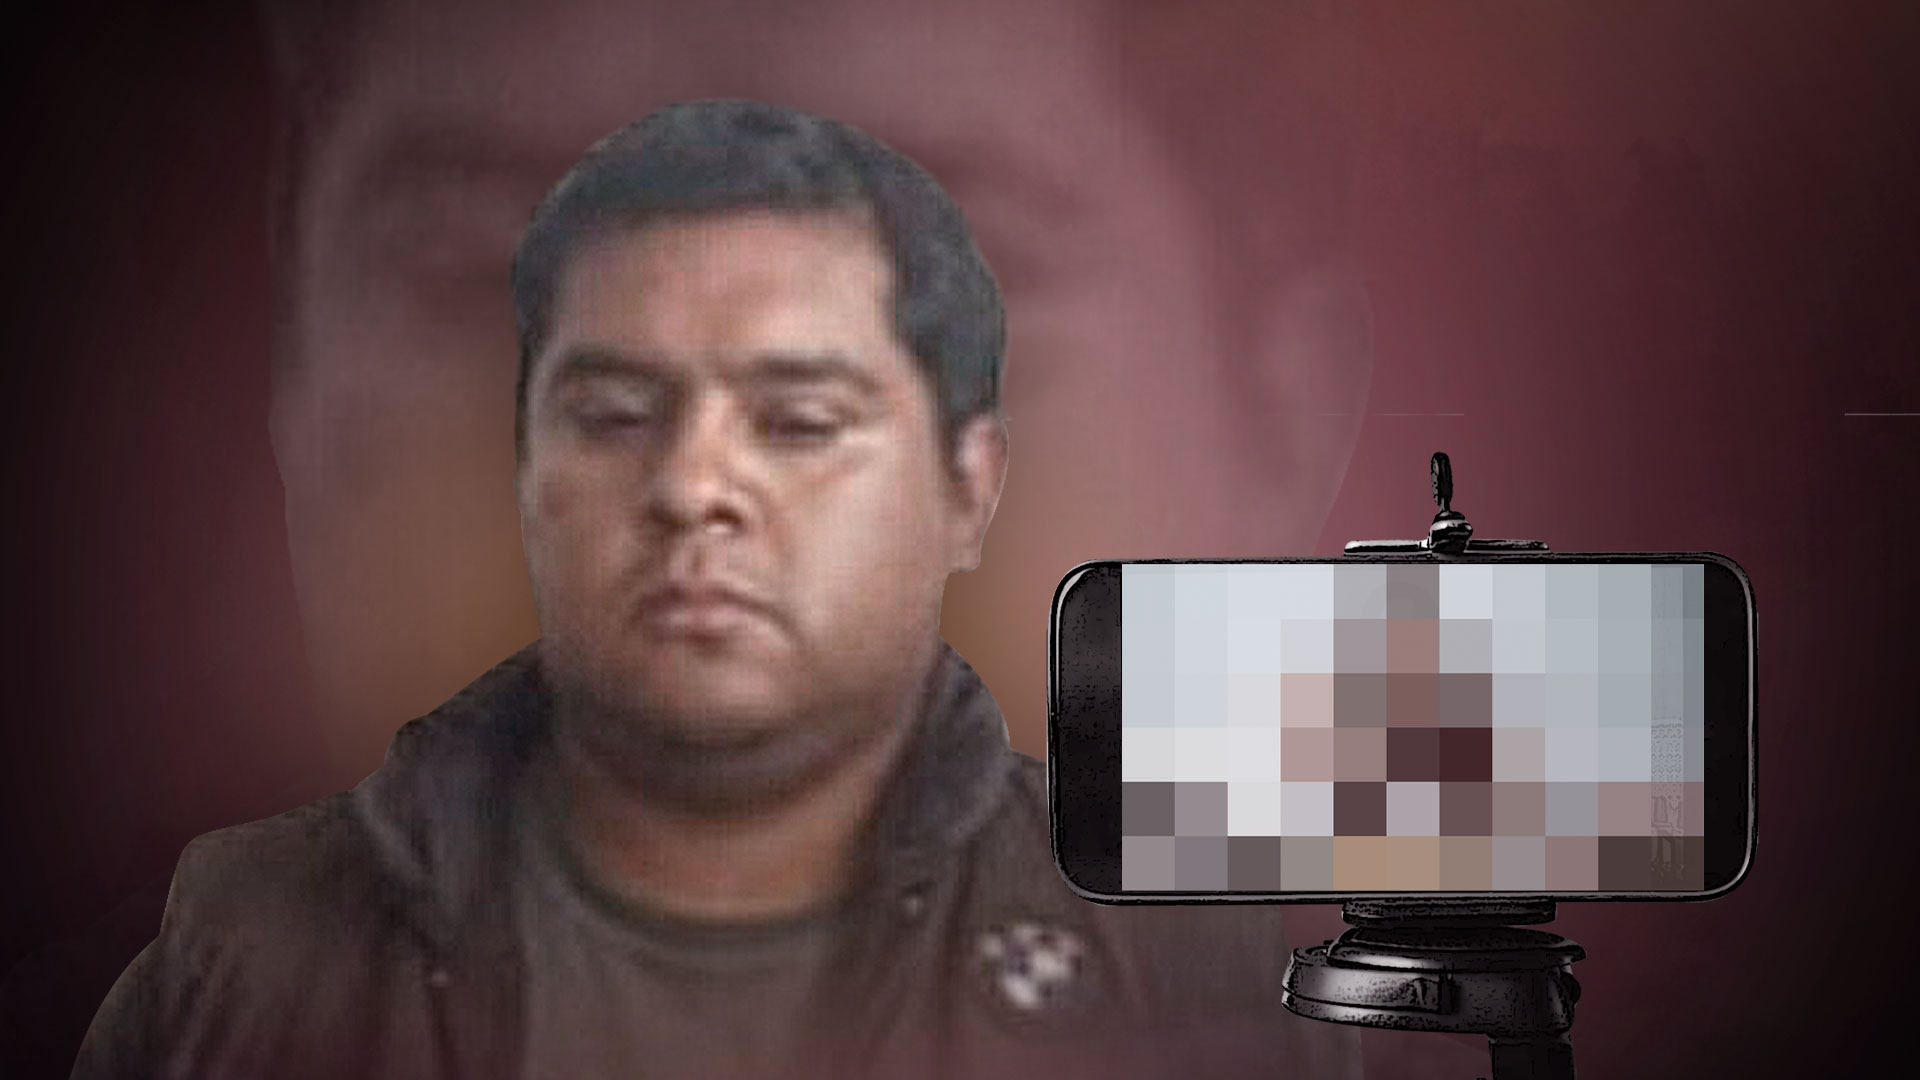 Marco Antonio recibió la sentencia más alta a nivel nacional por el delito de pornografía infantil (Ilustración: Jovani Pérez/Infobae)